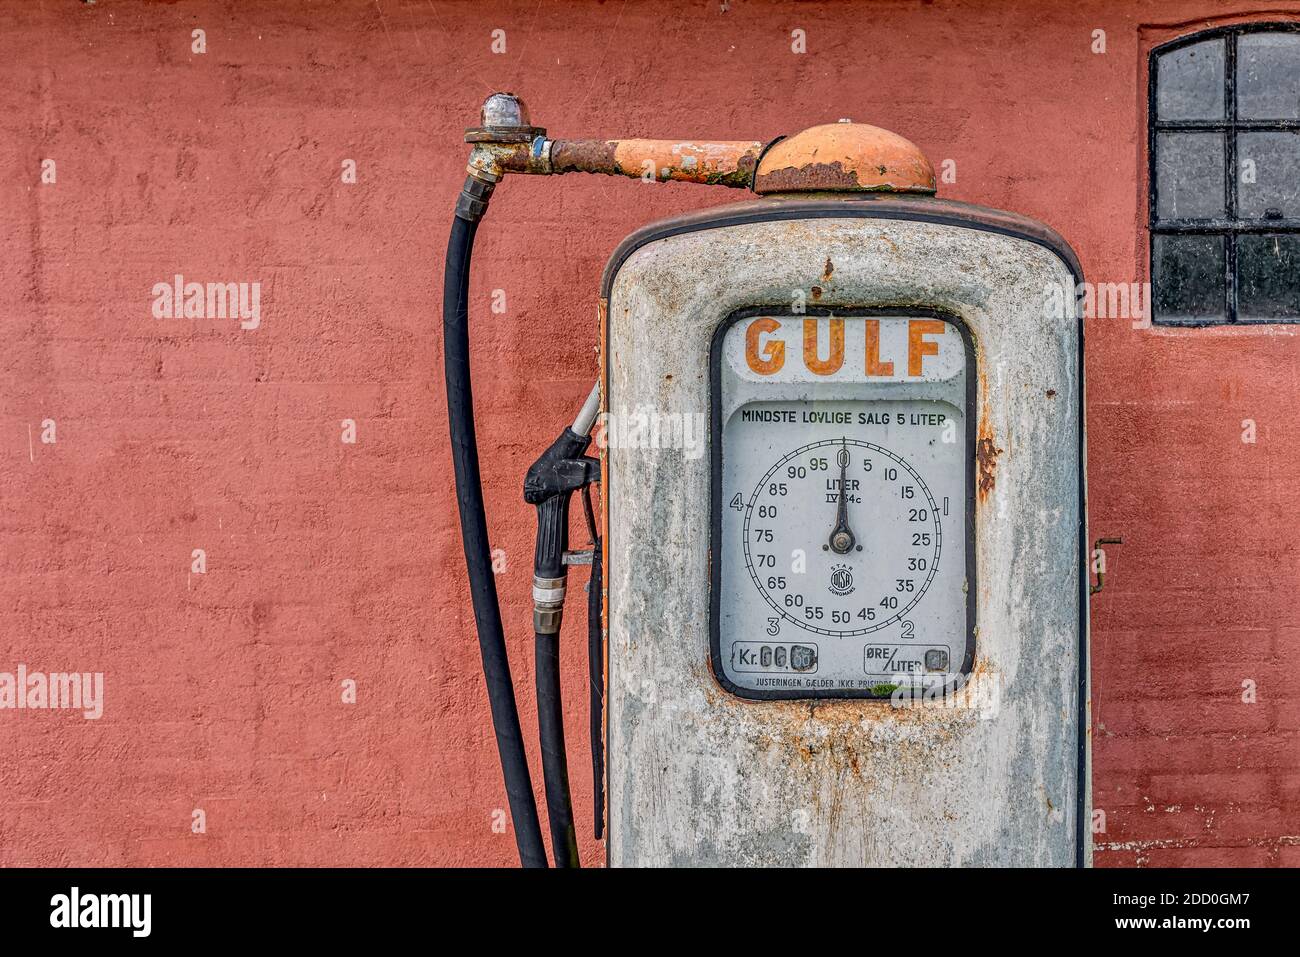 Una pompa a gas arrugginita abbandonata per la benzina del Golfo contro una parete di mattoni dipinti di rosso, Holl, Danimarca, 15 novembre 2020 Foto Stock